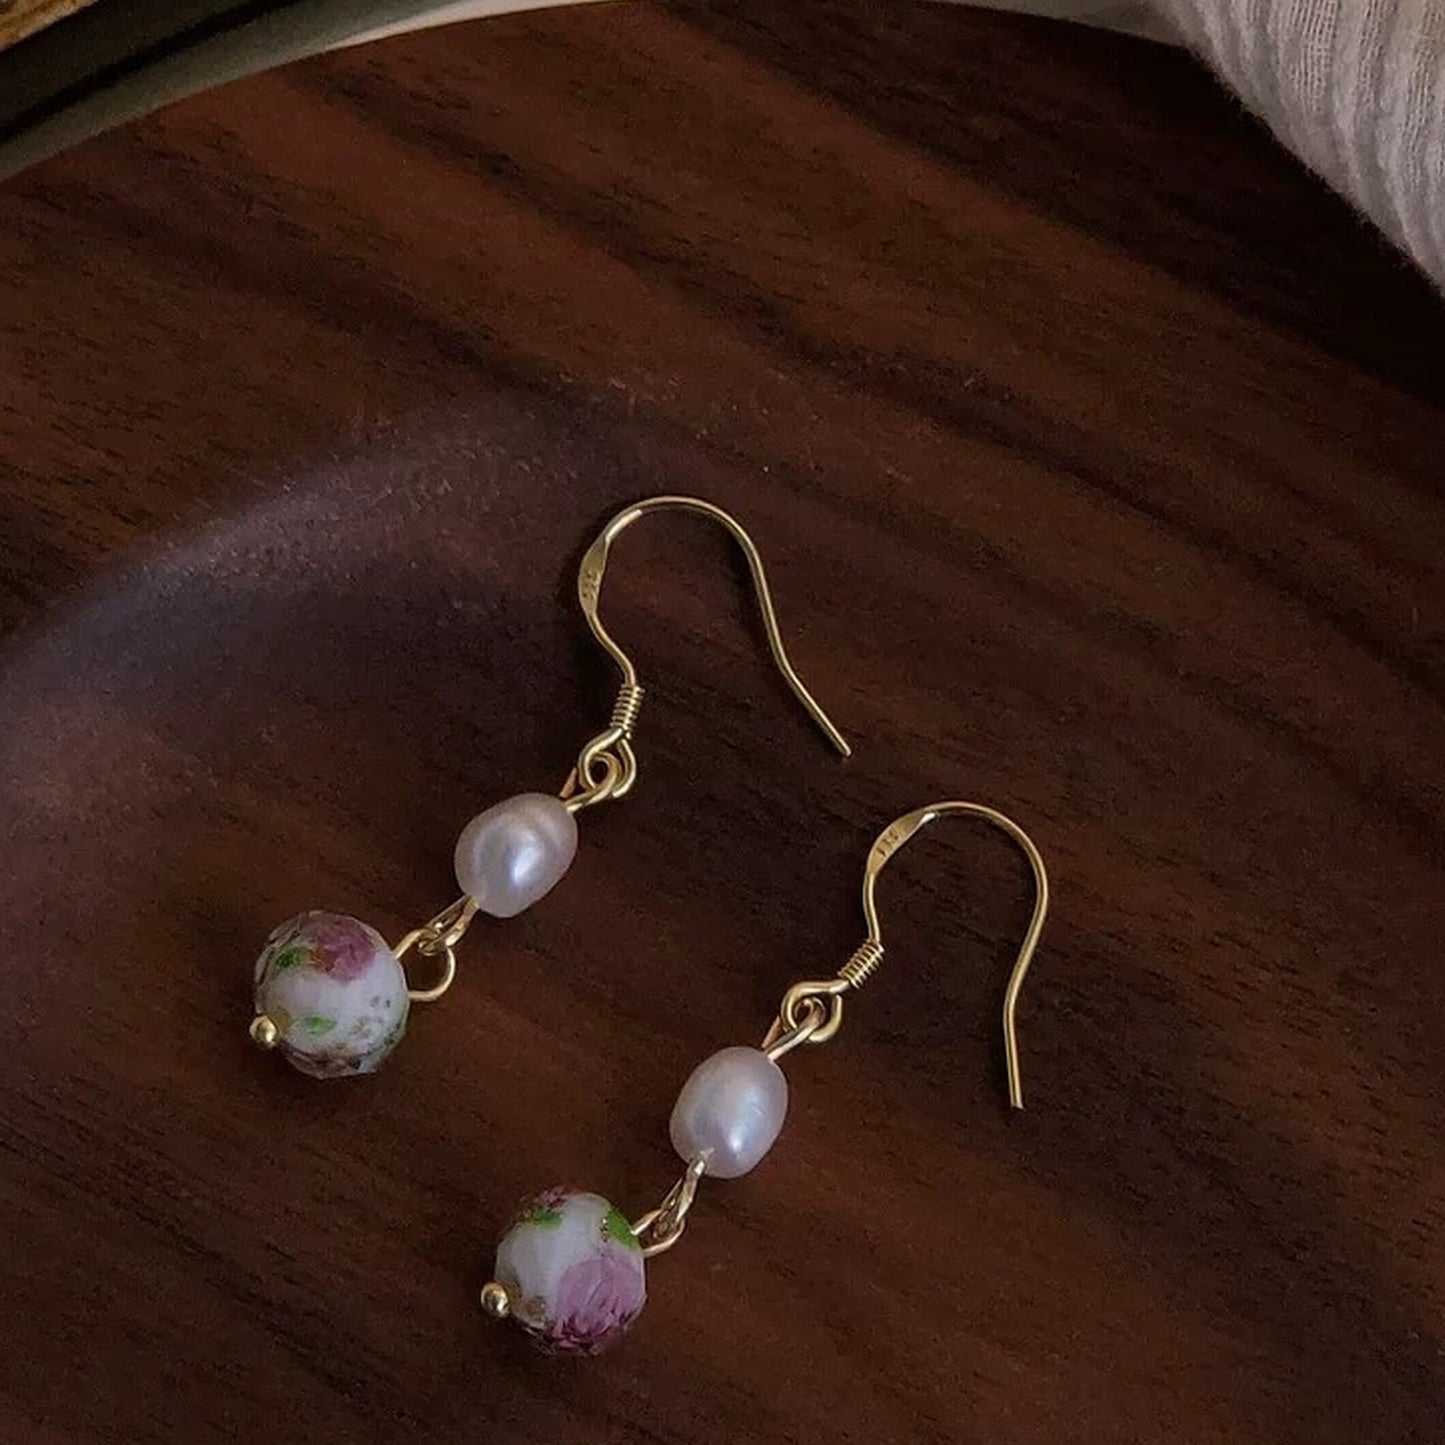 Vintage wild rose earrings, Natural pearl earrings, Flower drop earrings, Gold glass ball dangle earrings, Delicate handmade gift for mom